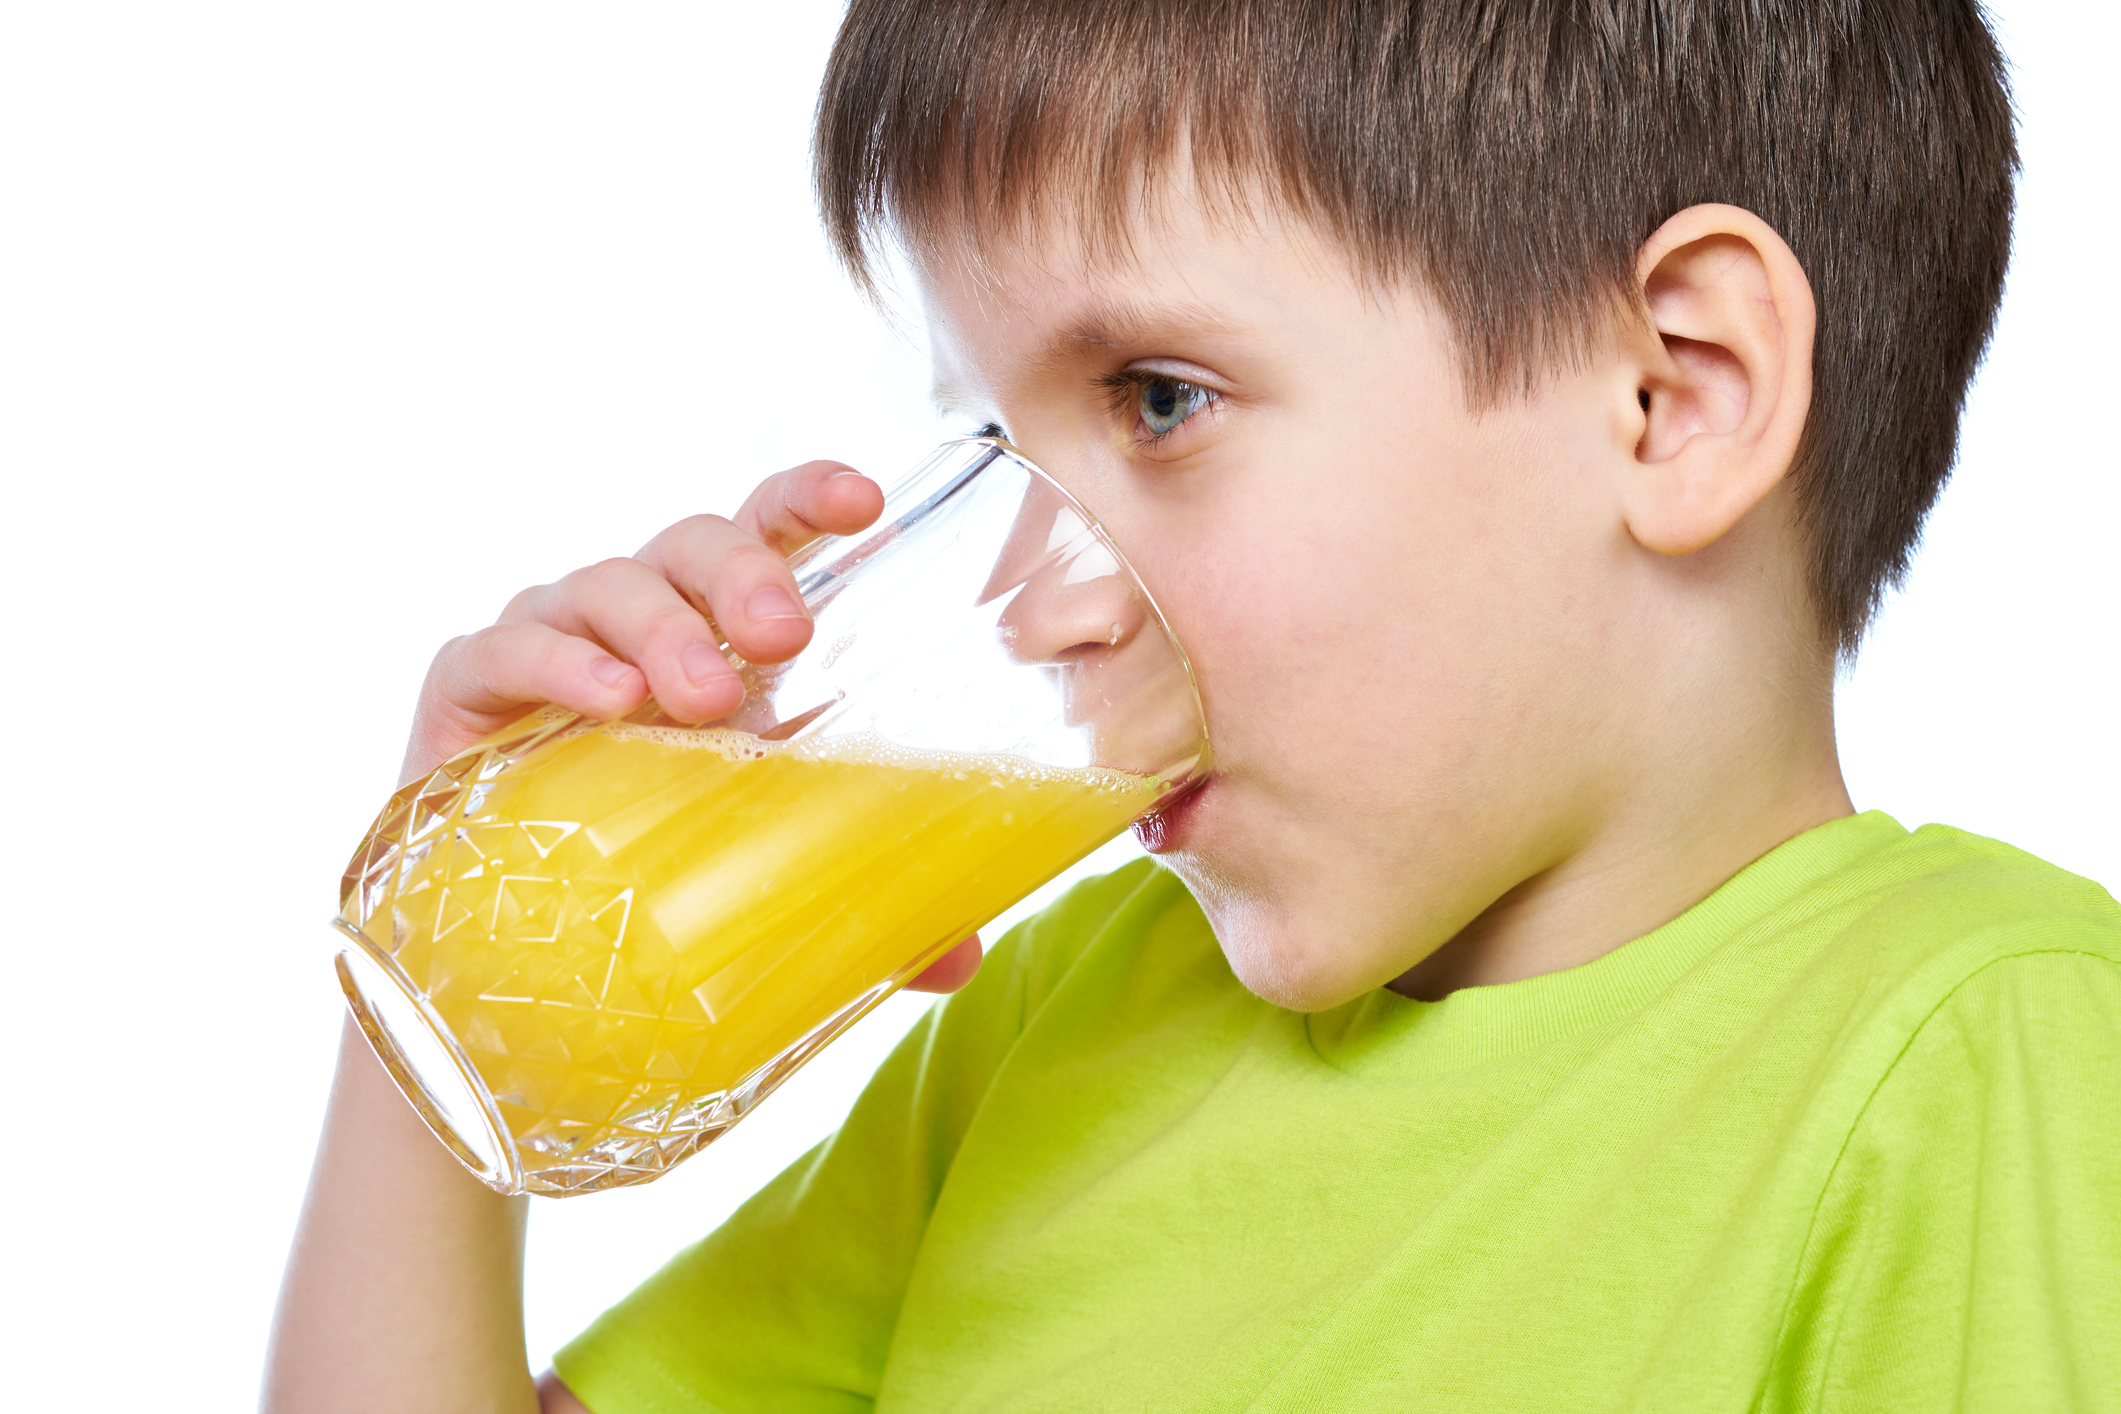 Пьет сок написать. Мальчик пьет сок. Мальчик пьет сок на белом фоне. Стакан сока в руке. Пить сок.